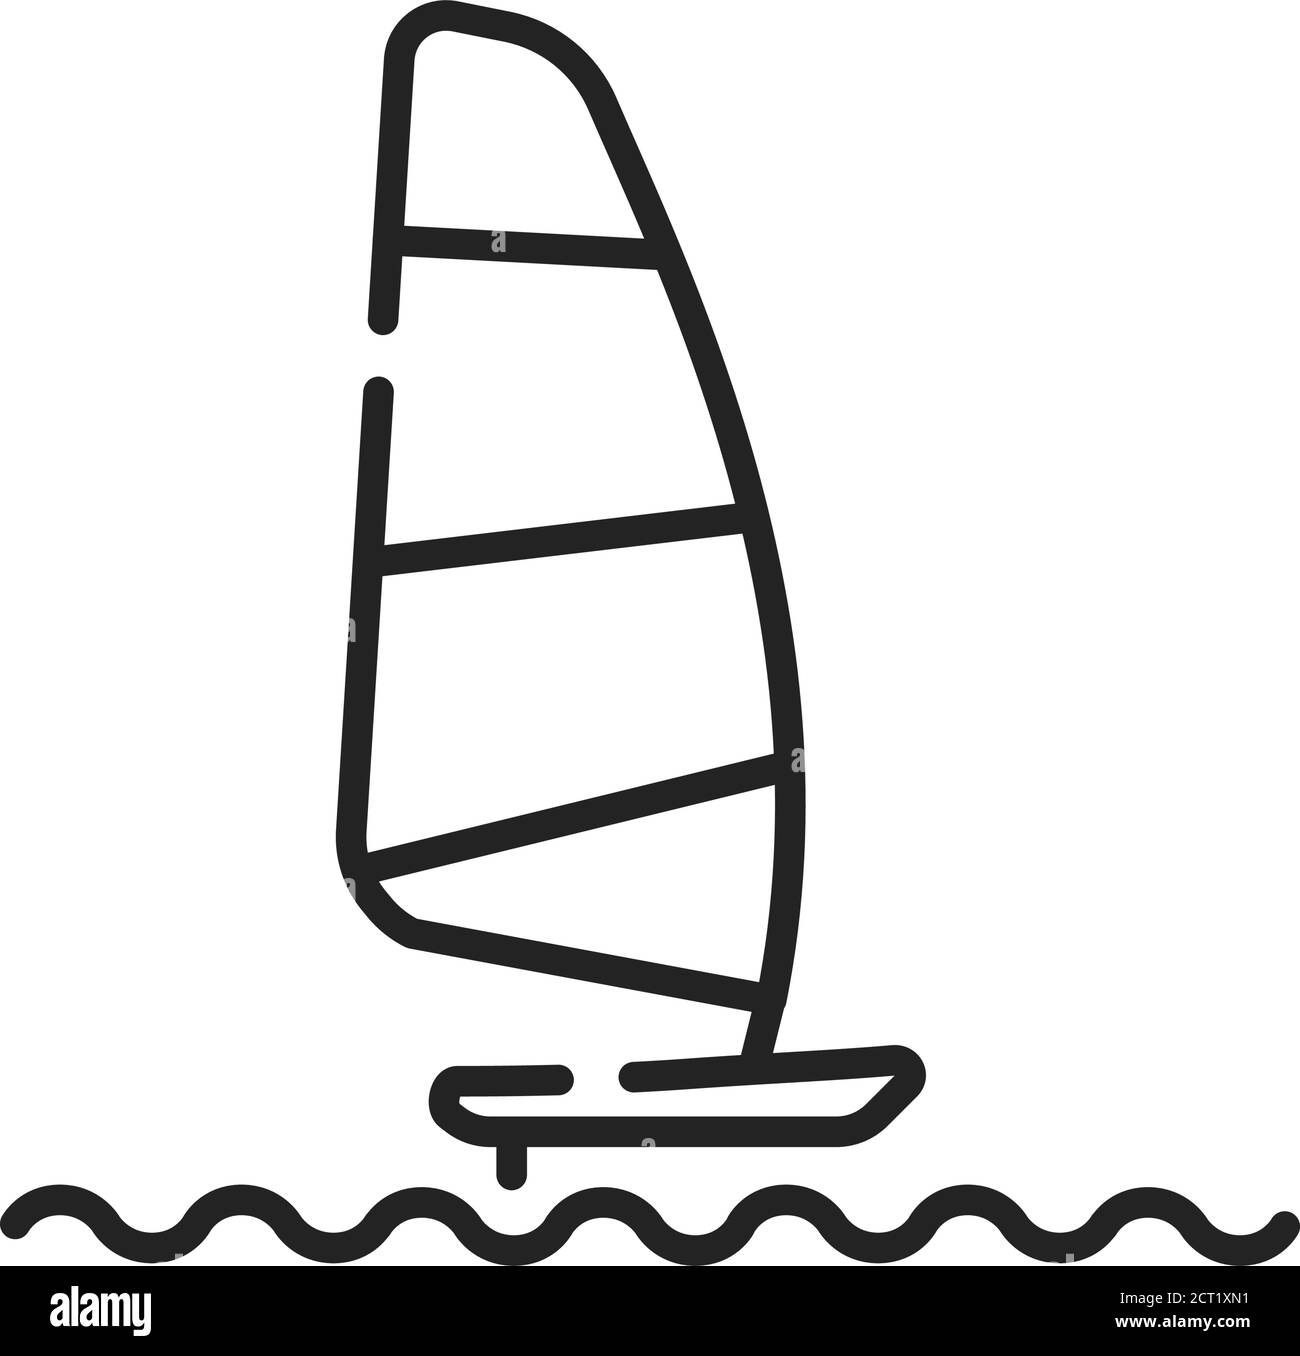 Icona della linea nera per windsurf. Sport d'acqua di superficie. Combina elementi di surf e vela. Pittogramma per pagina web, app mobile, promo. GUI UI UX Illustrazione Vettoriale